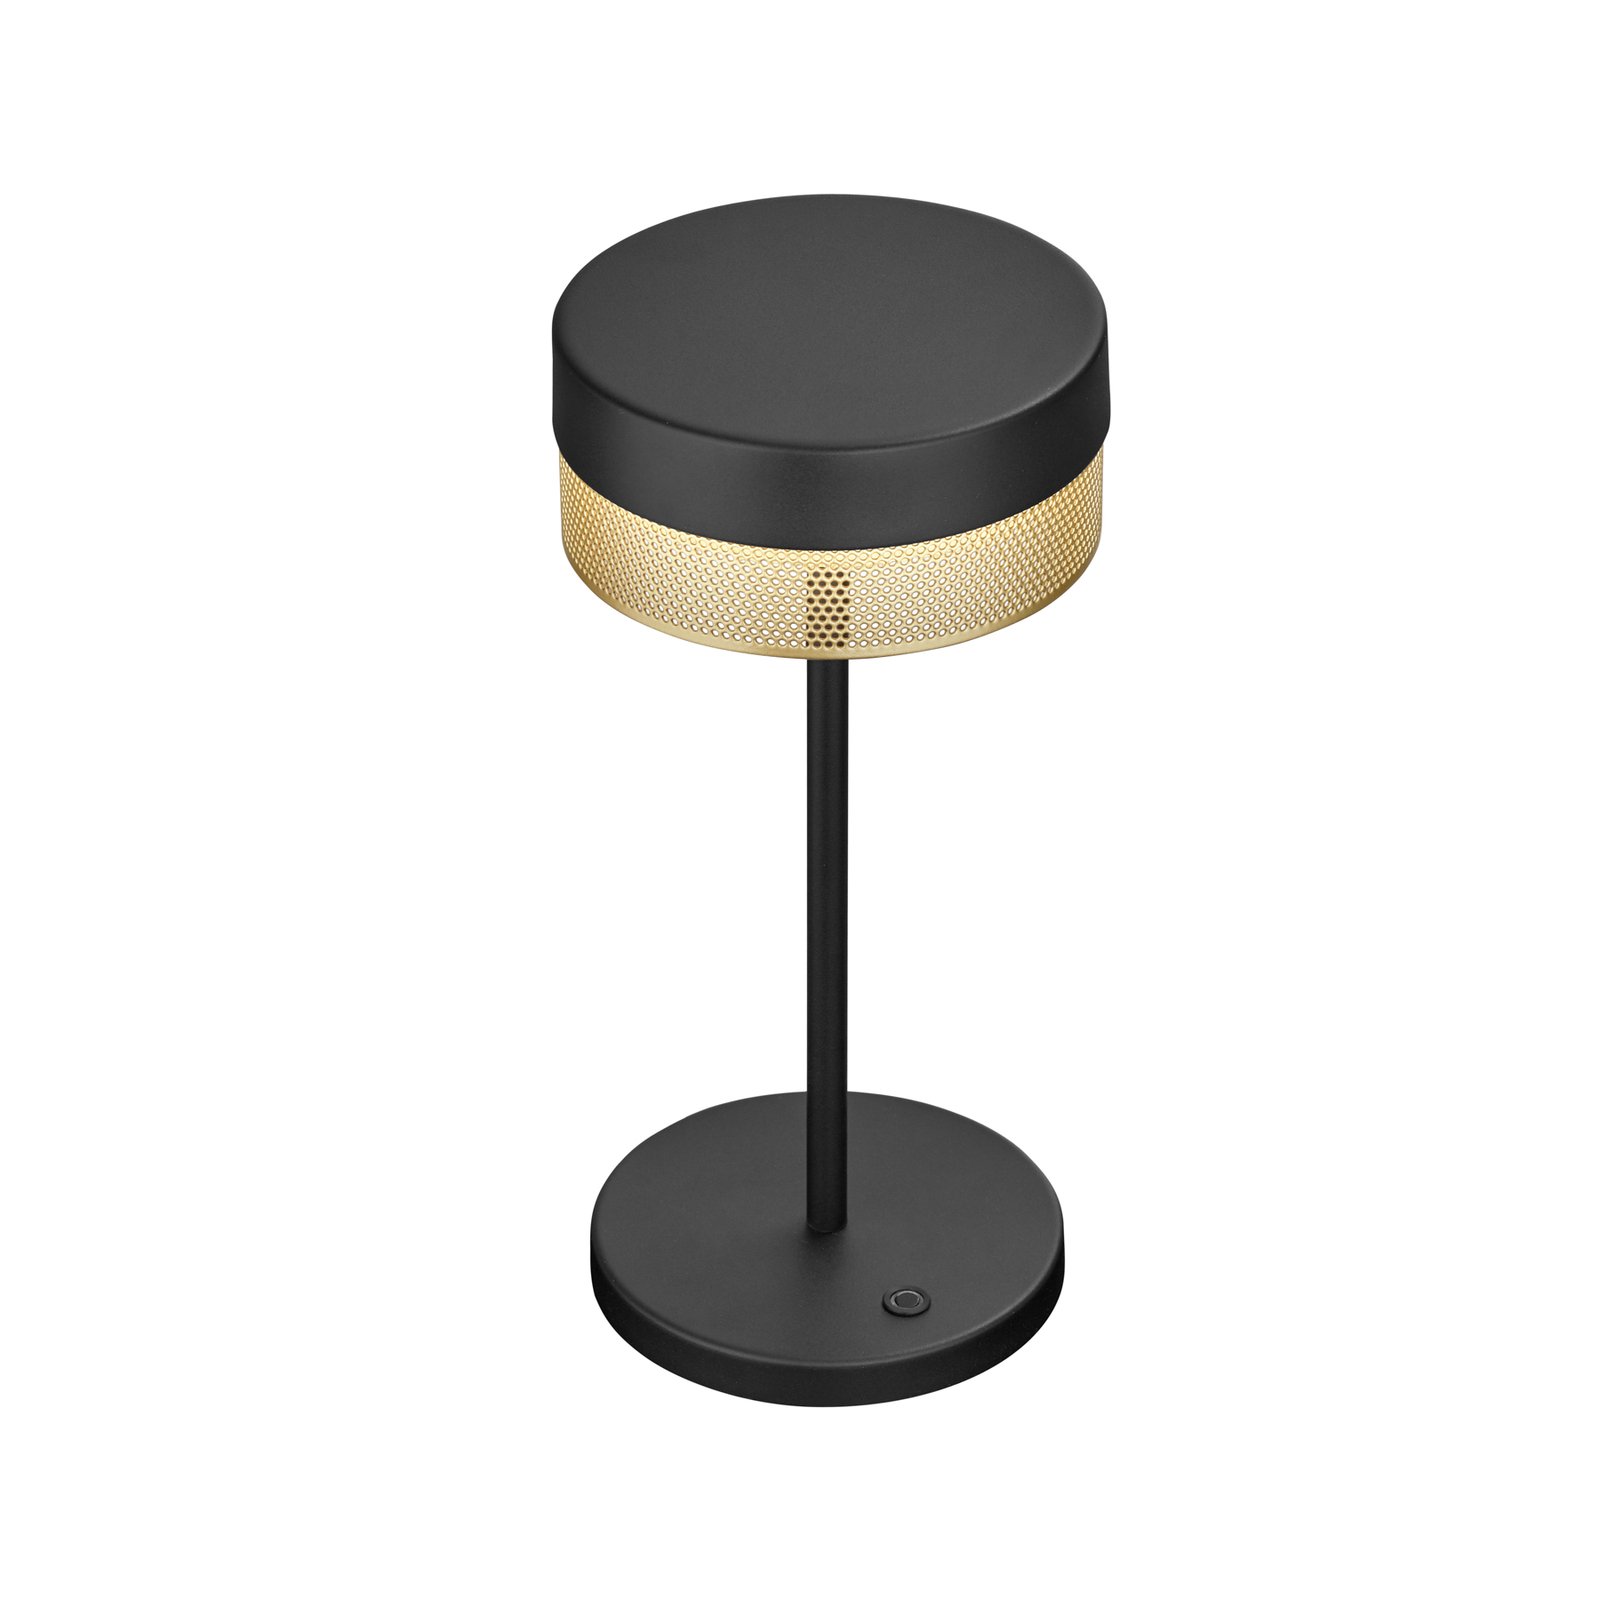 LED asztali lámpa Mesh akku, 30 cm, fekete/arany